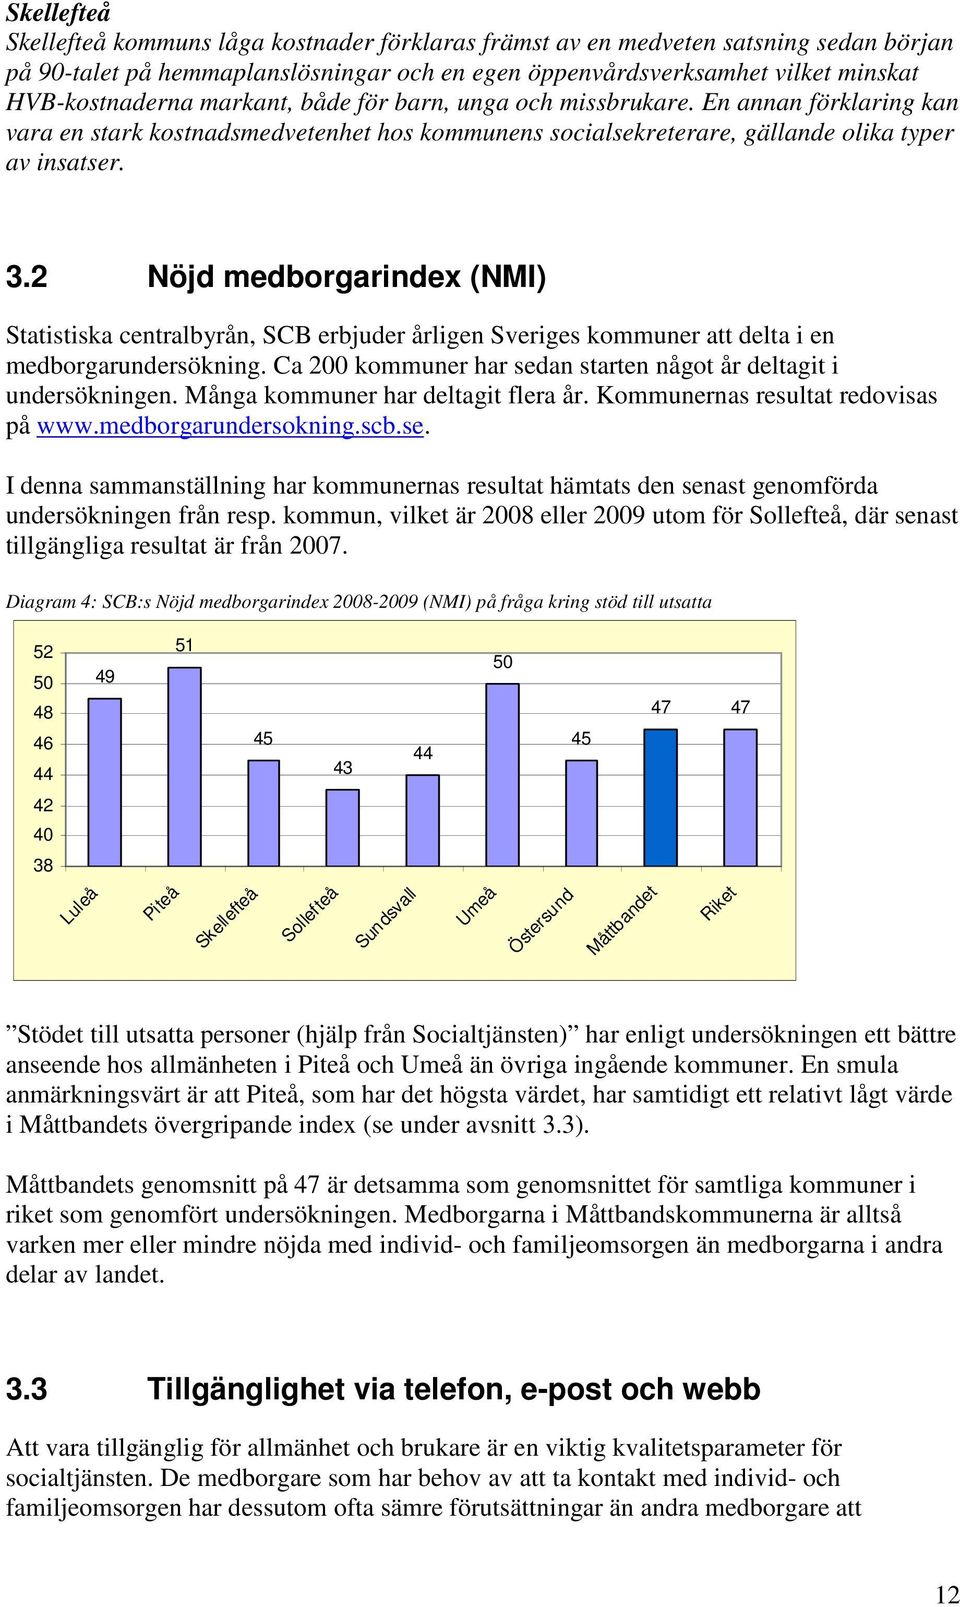 2 Nöjd medborgarindex (NMI) Statistiska centralbyrån, SCB erbjuder årligen Sveriges kommuner att delta i en medborgarundersökning. Ca 200 kommuner har sedan starten något år deltagit i undersökningen.